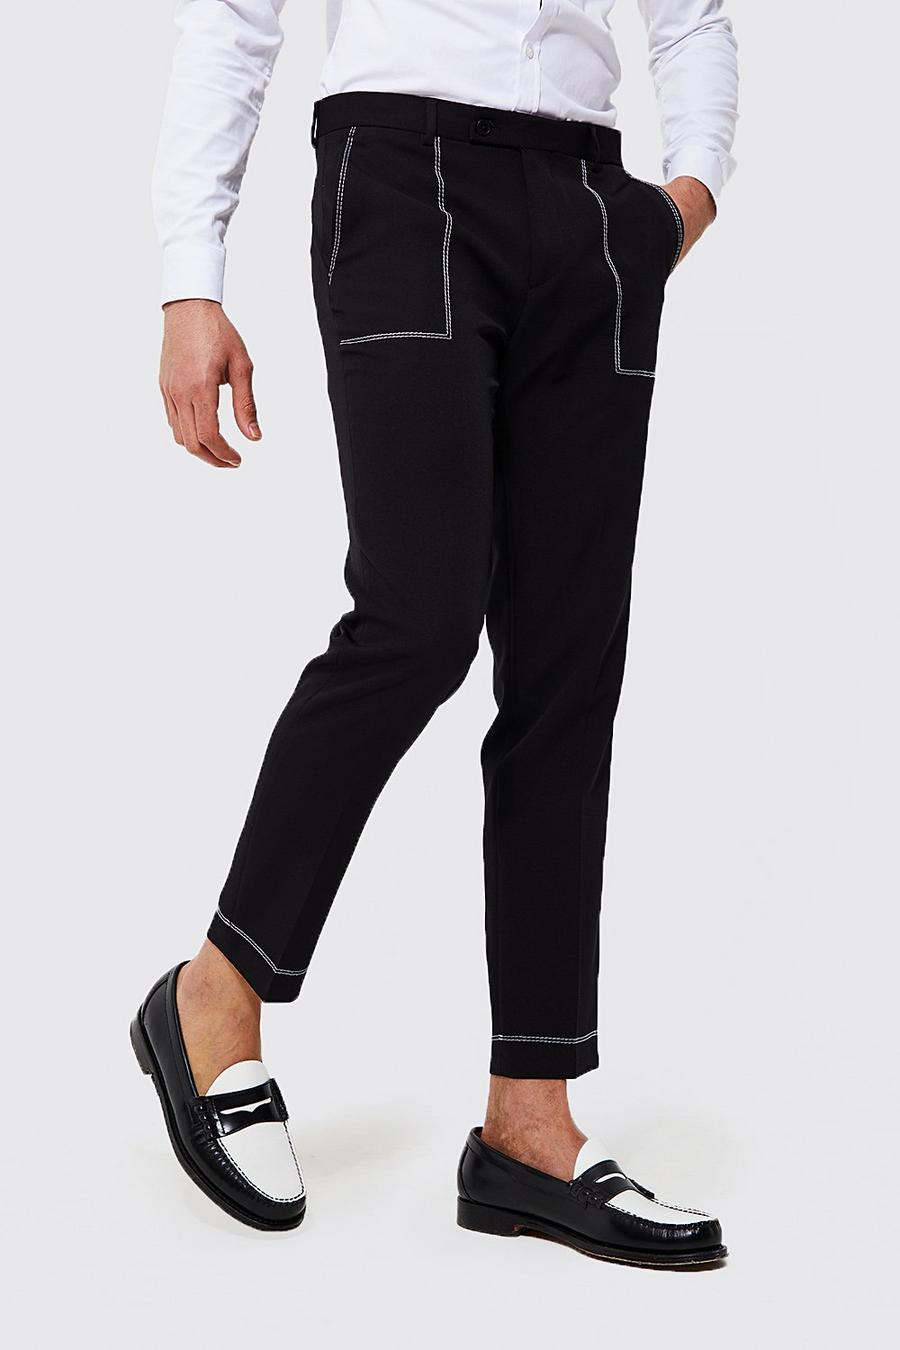 Pantaloni completo Slim Fit con cuciture a contrasto, Black nero